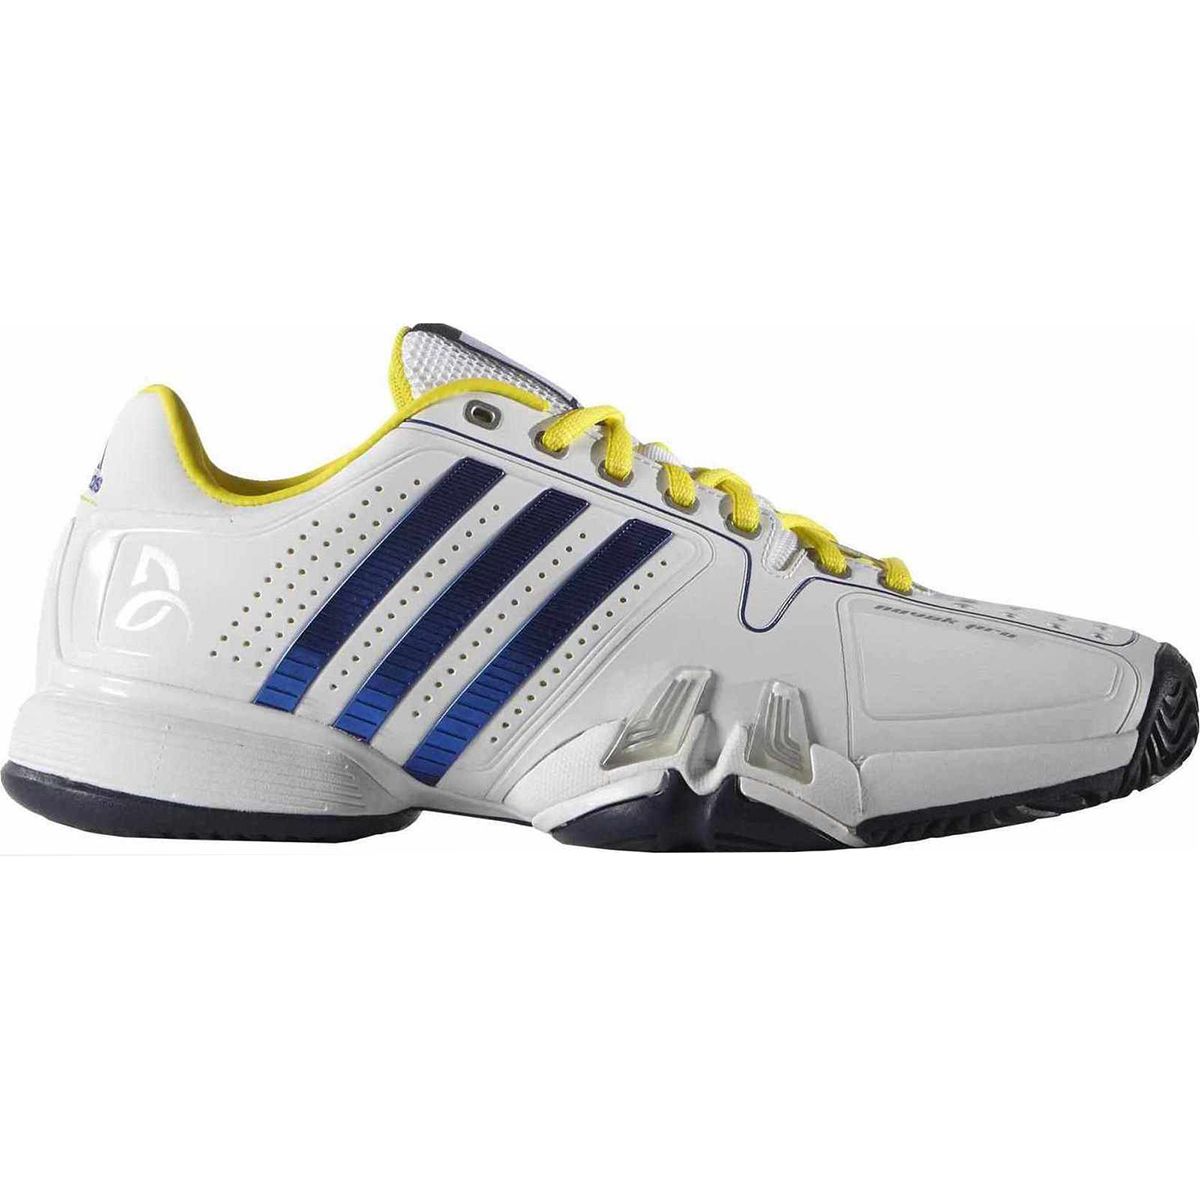 Adidas Novak Pro Men's Tennis Shoes AQ5673